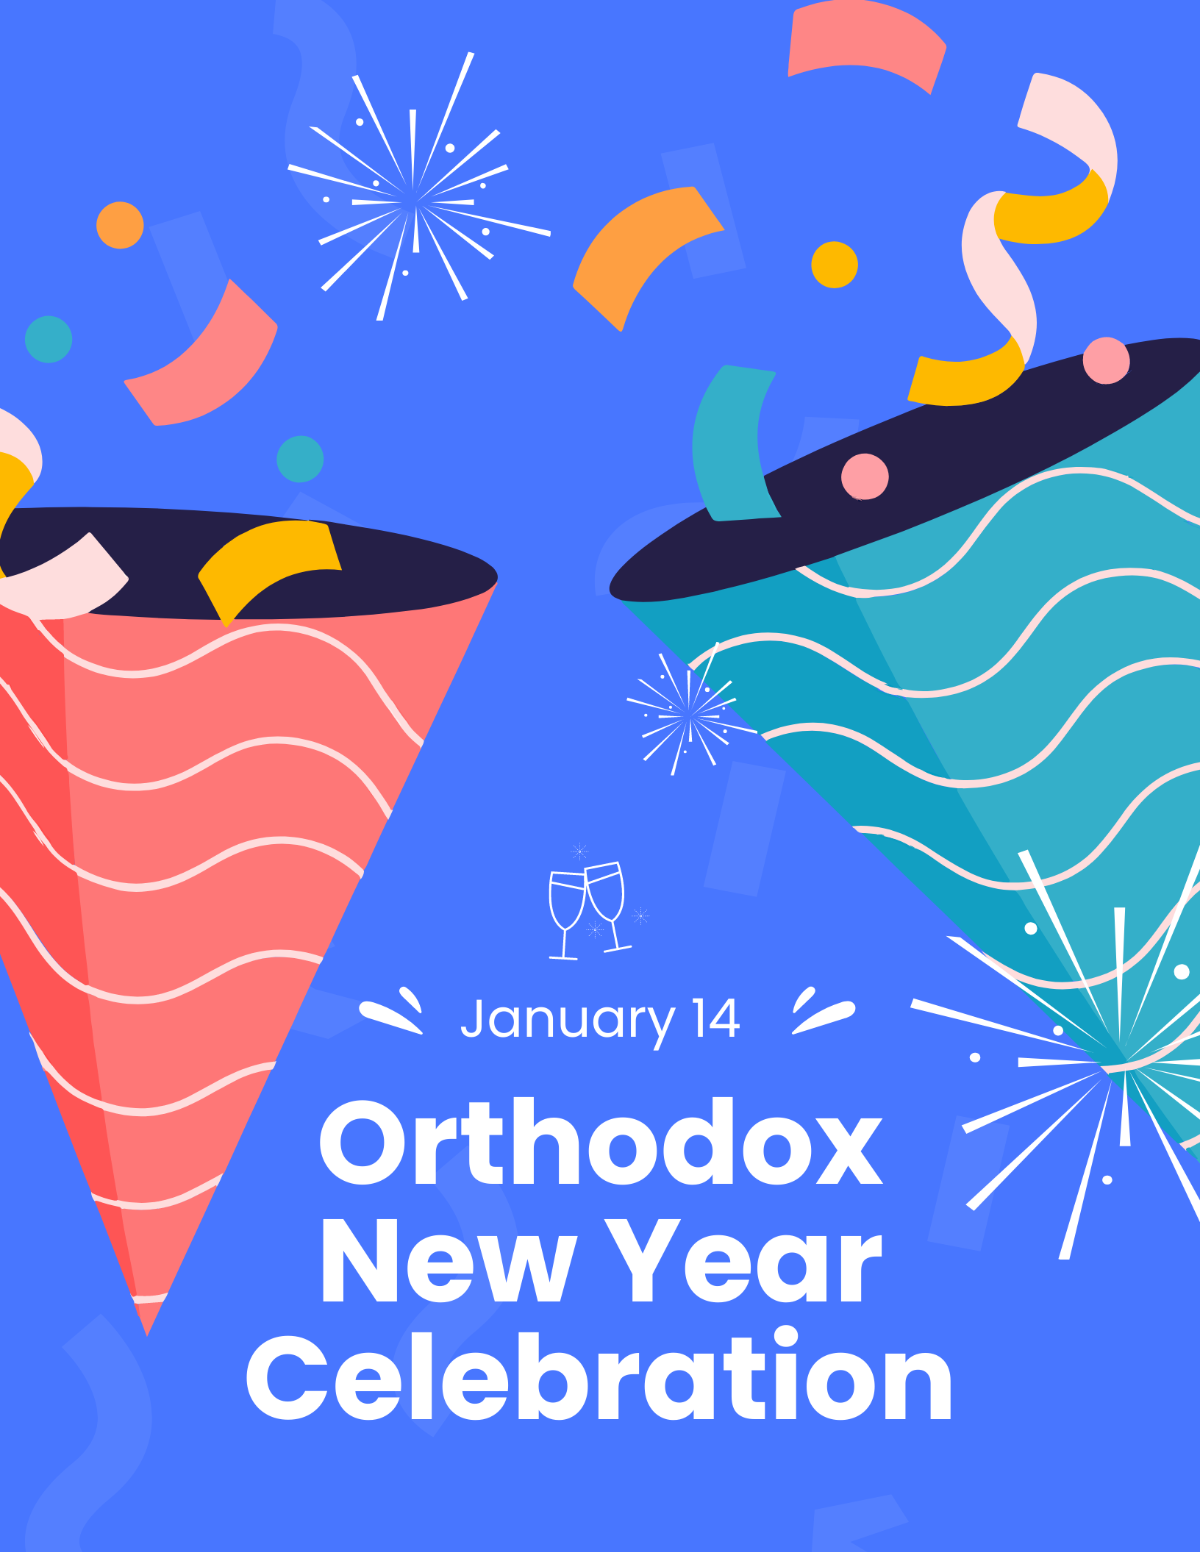 Orthodox New Year Celebration Flyer